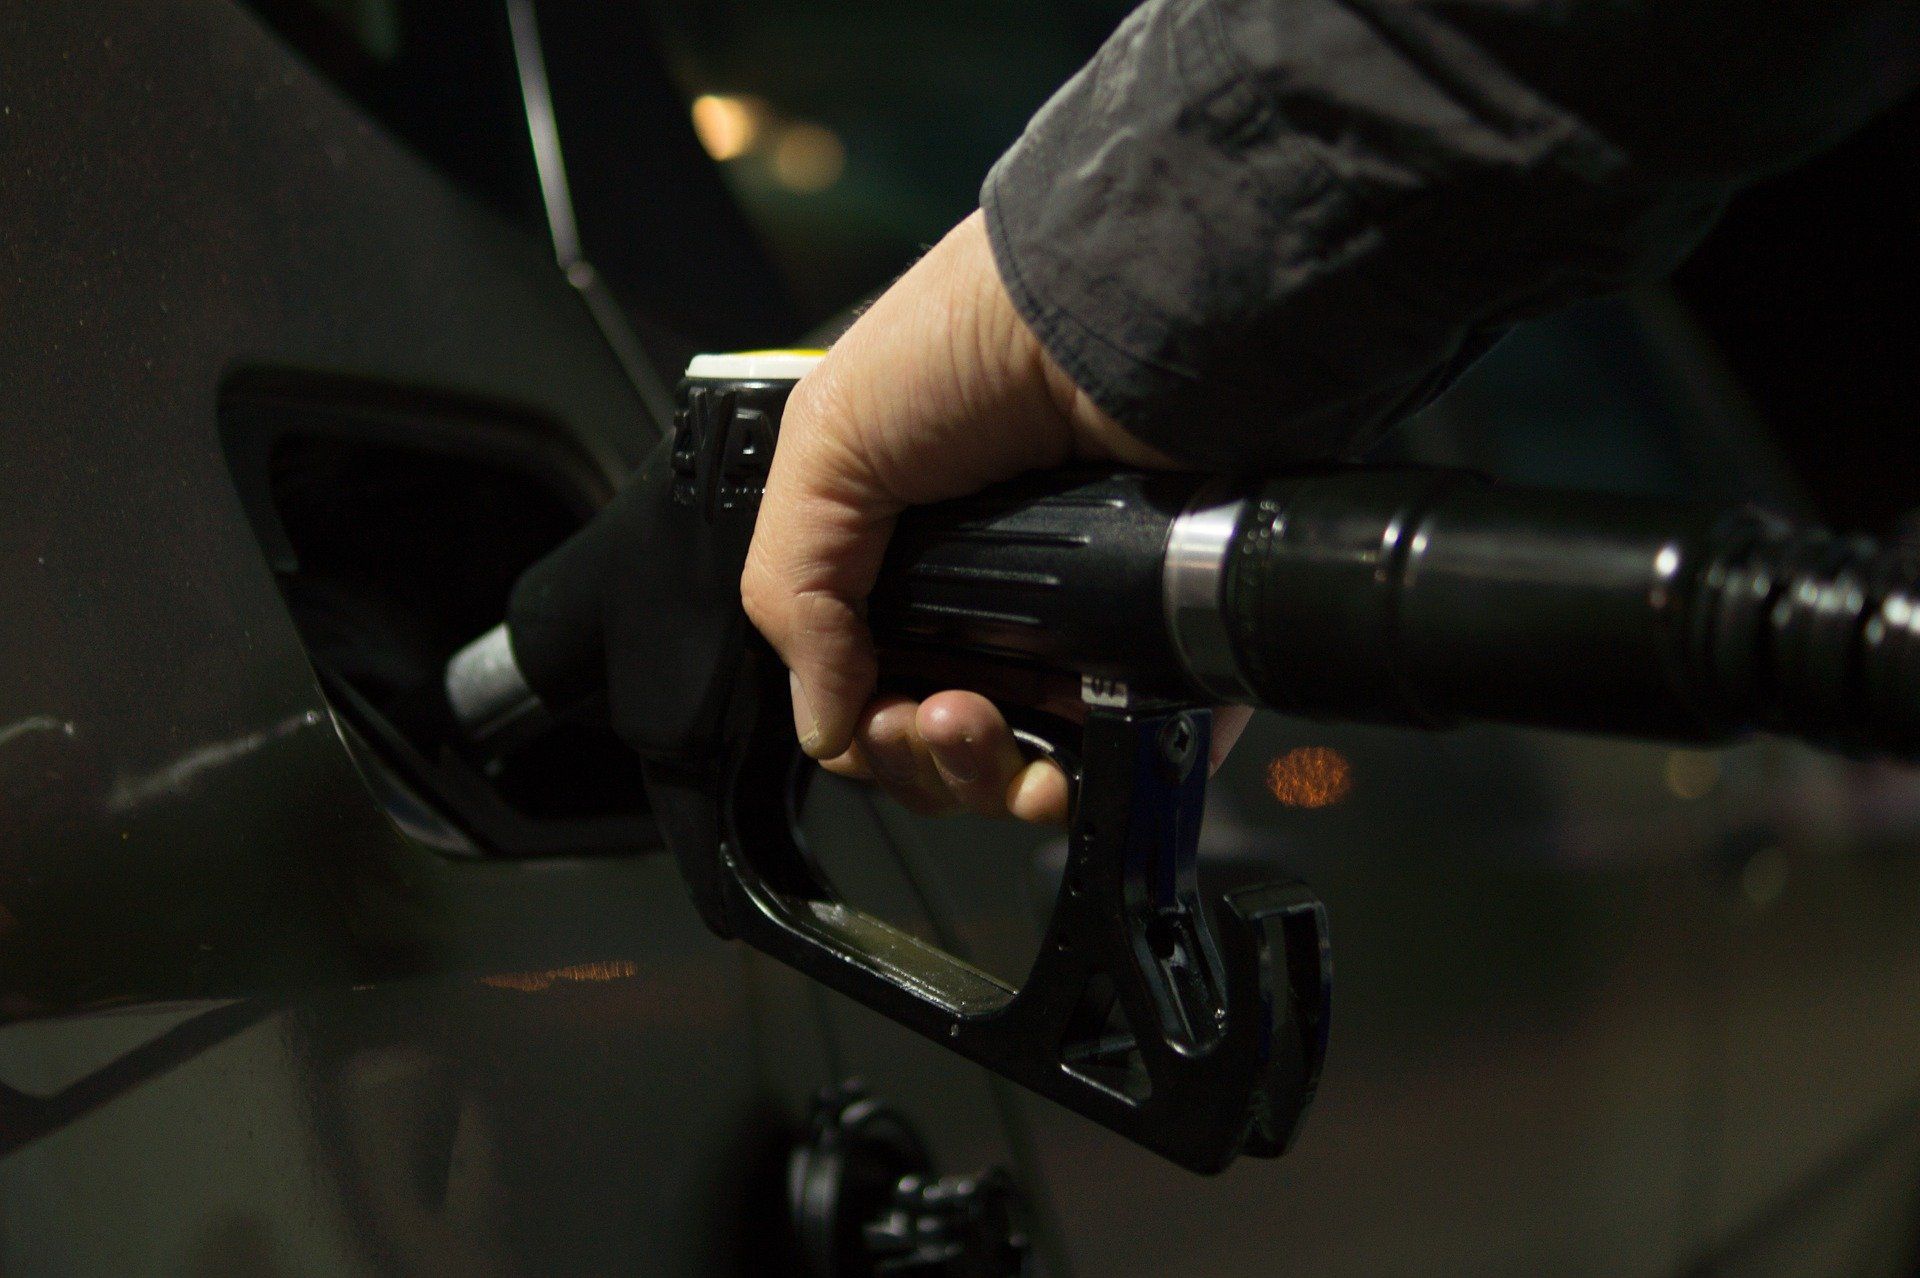 Fuel price May 24, 2022: Petrol Rs 96.72, diesel Rs 89.62 in Delhi